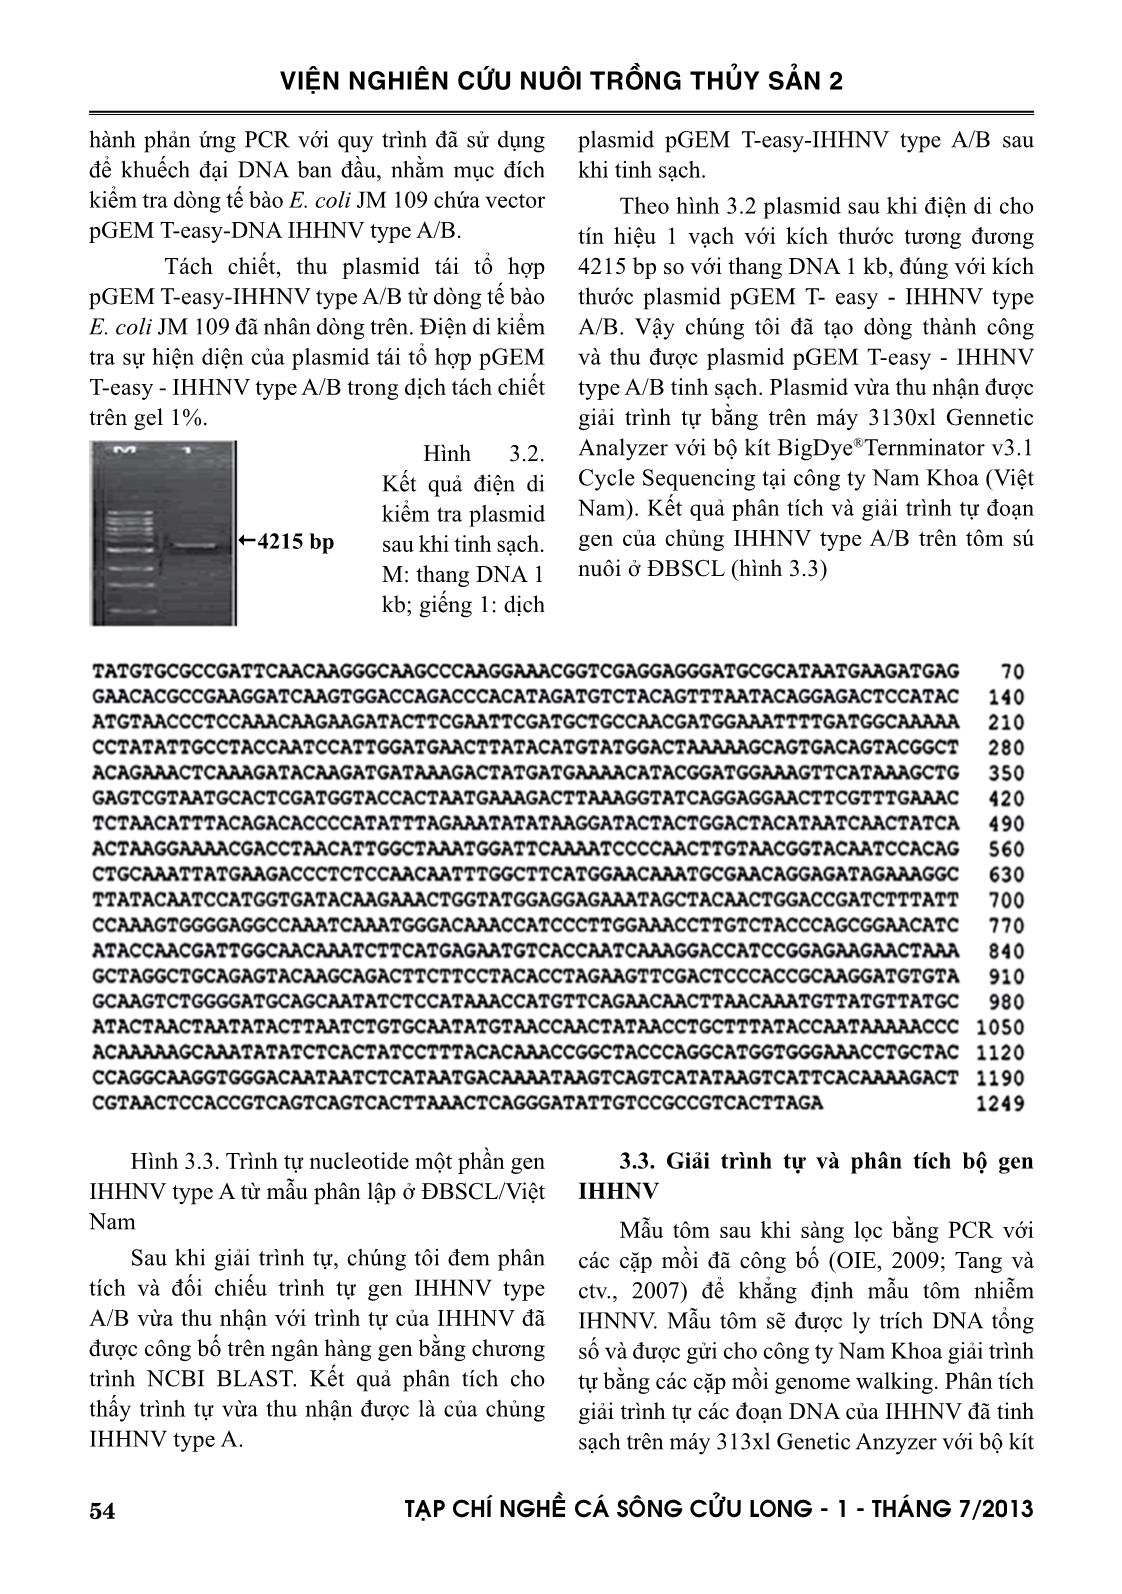 Đặc trưng di truyền của chủng IHHNV phân lập tôm nuôi ở đồng bằng sông Cửu Long trang 6